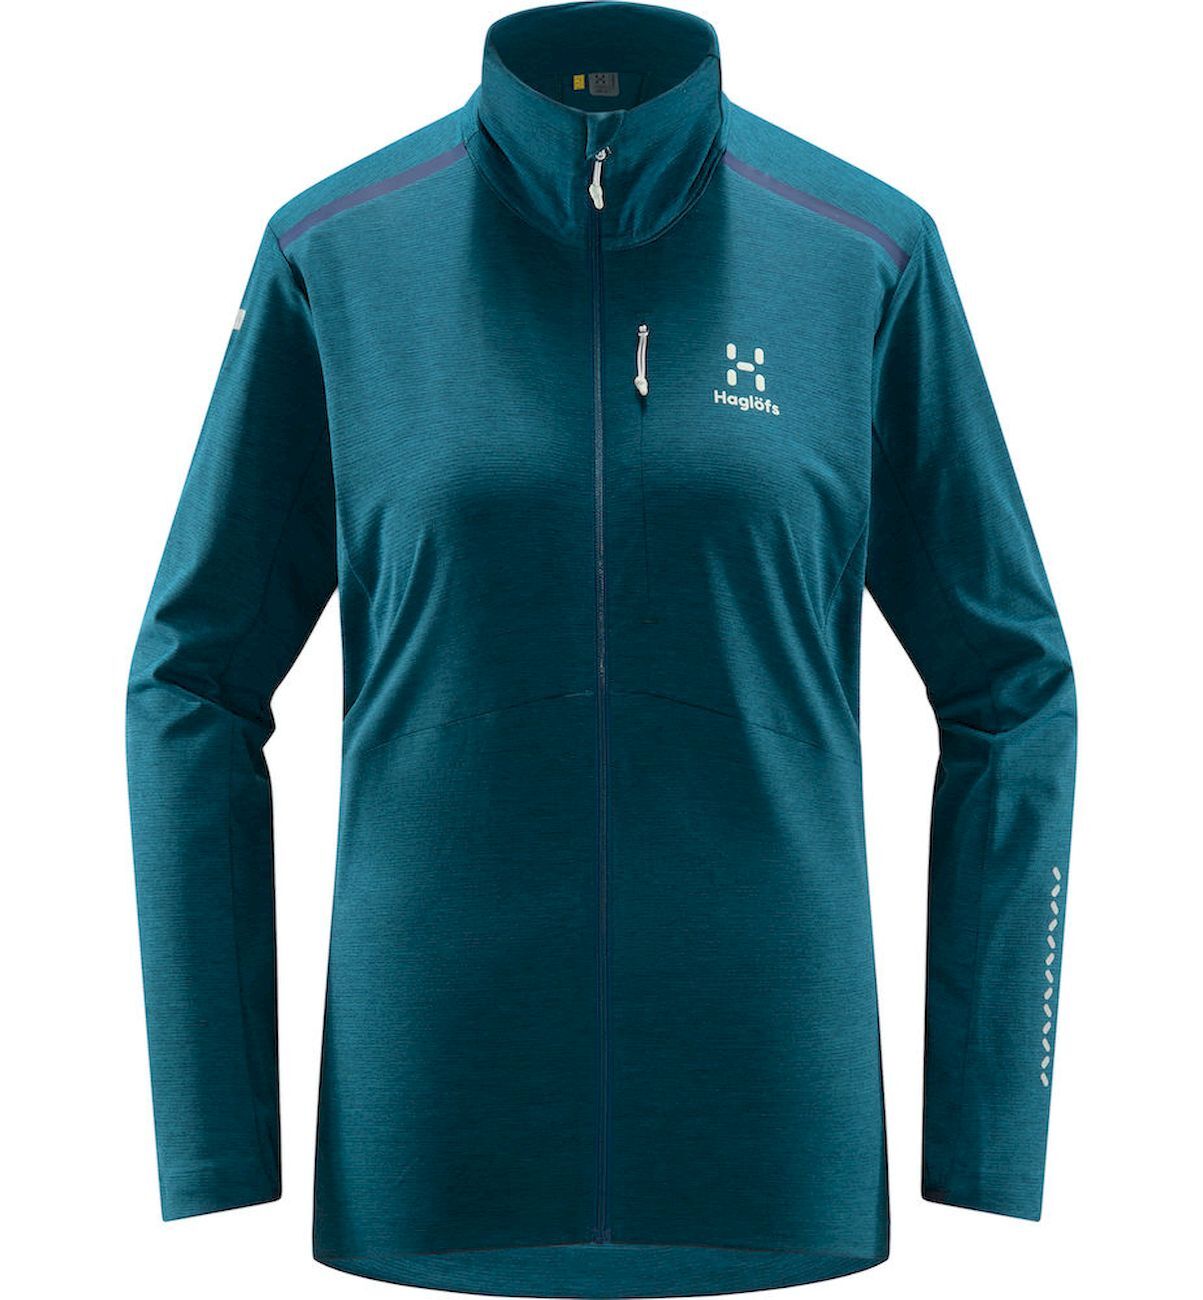 Haglöfs L.I.M Strive Mid Jacket - Fleece jacket - Women's